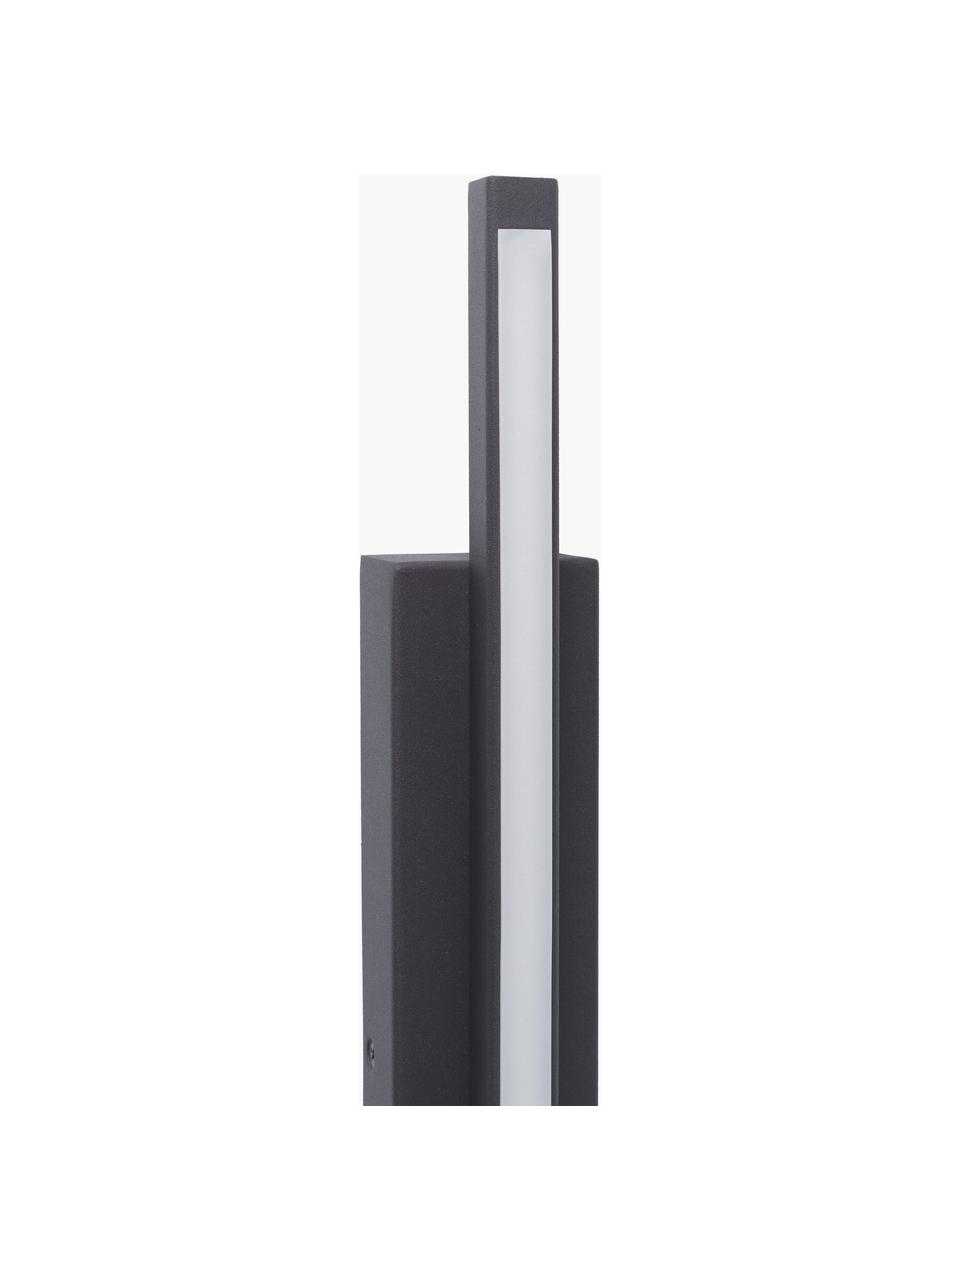 Kinkiet LED Geometric, Czarny, S 6 x W 56 cm